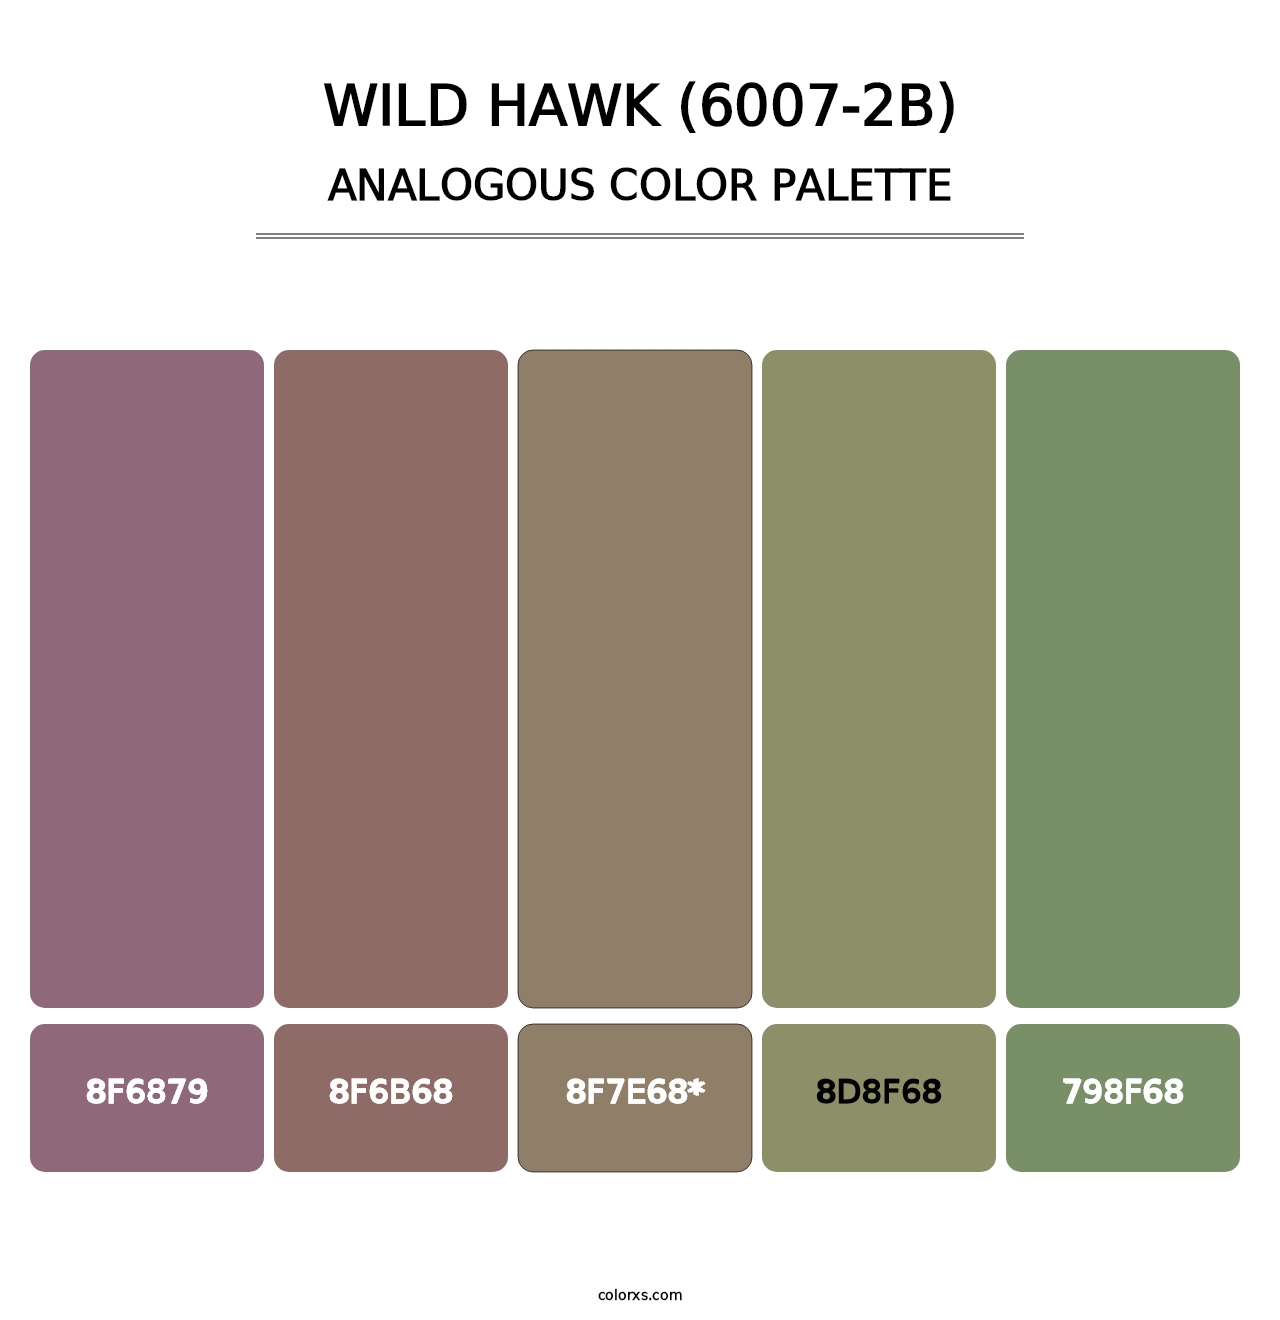 Wild Hawk (6007-2B) - Analogous Color Palette